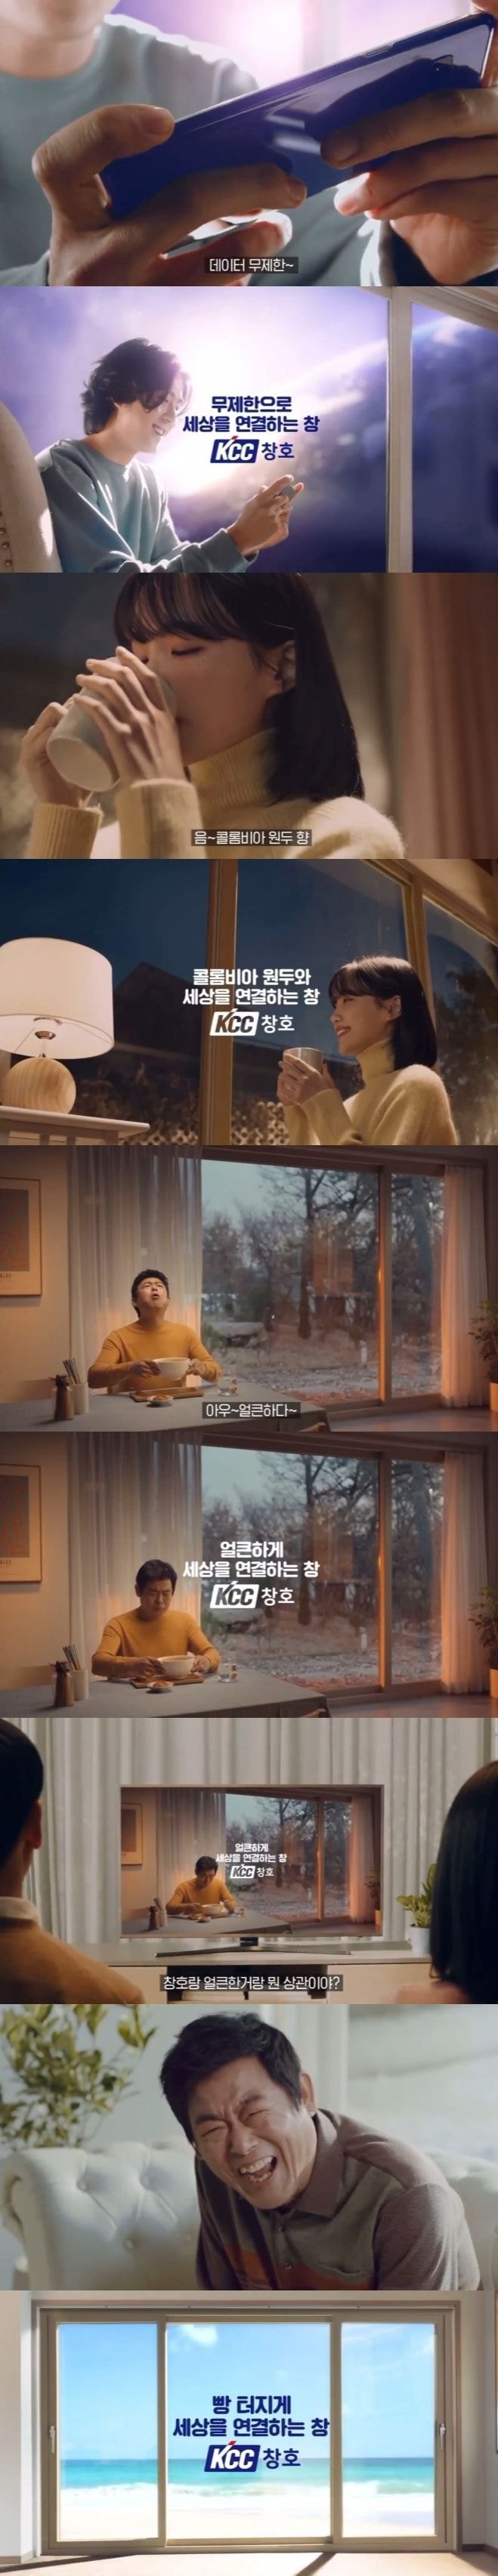 웃긴 광고 재밌는 광고 무한 광고 유니버스에 갇힌 성동일 (feat. kcc창호)